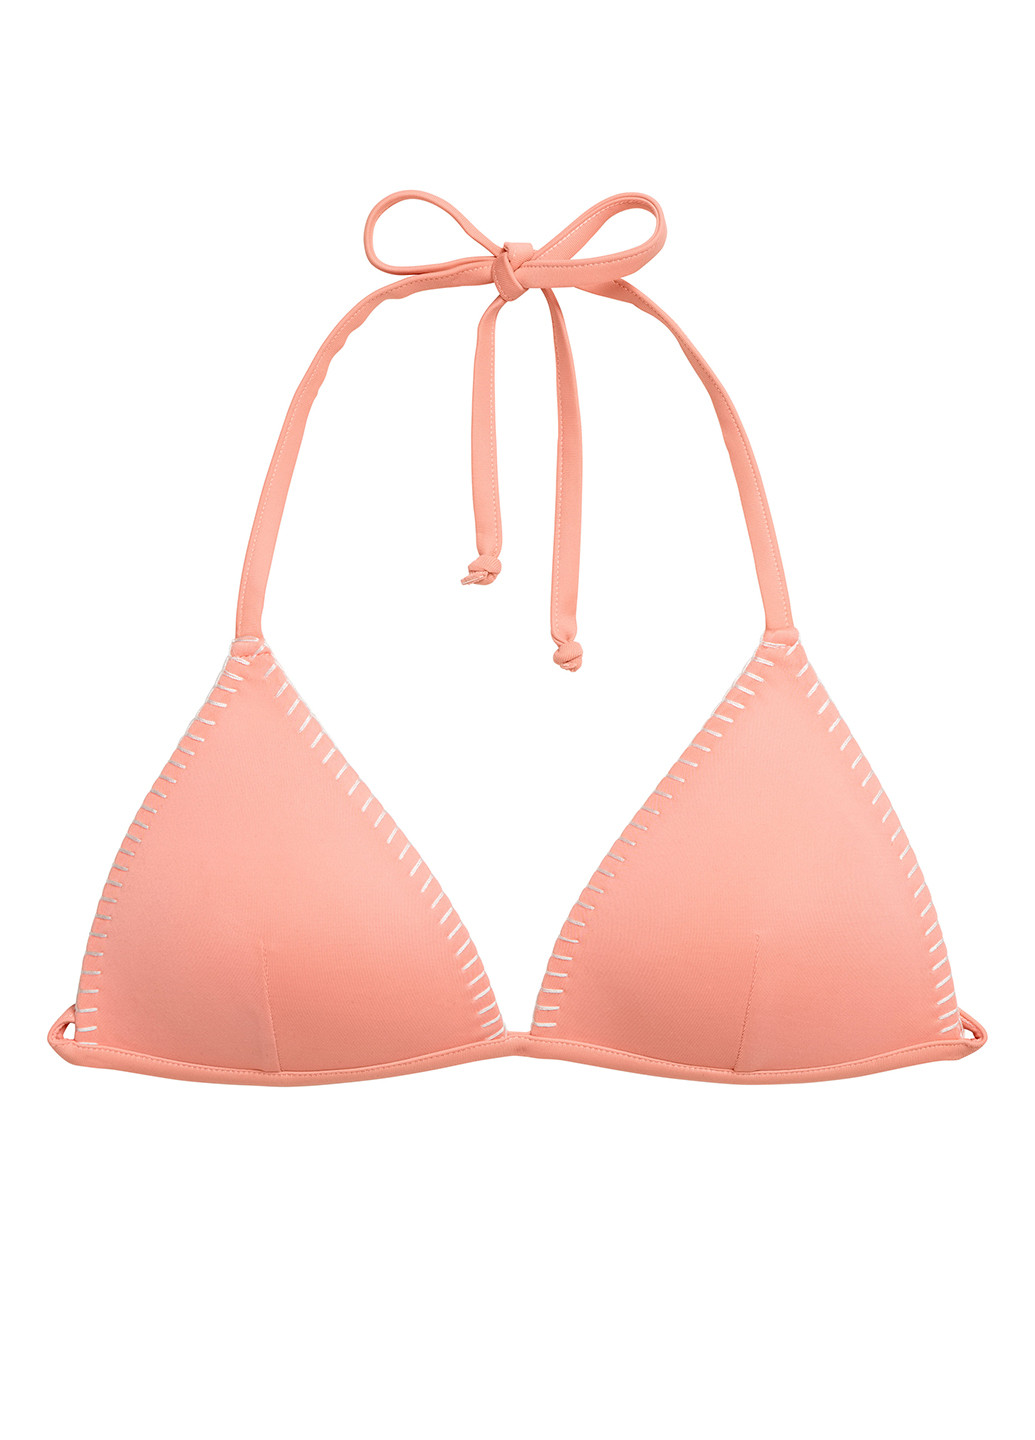 Купальный лиф H&M бикини однотонный розовый пляжный полиэстер